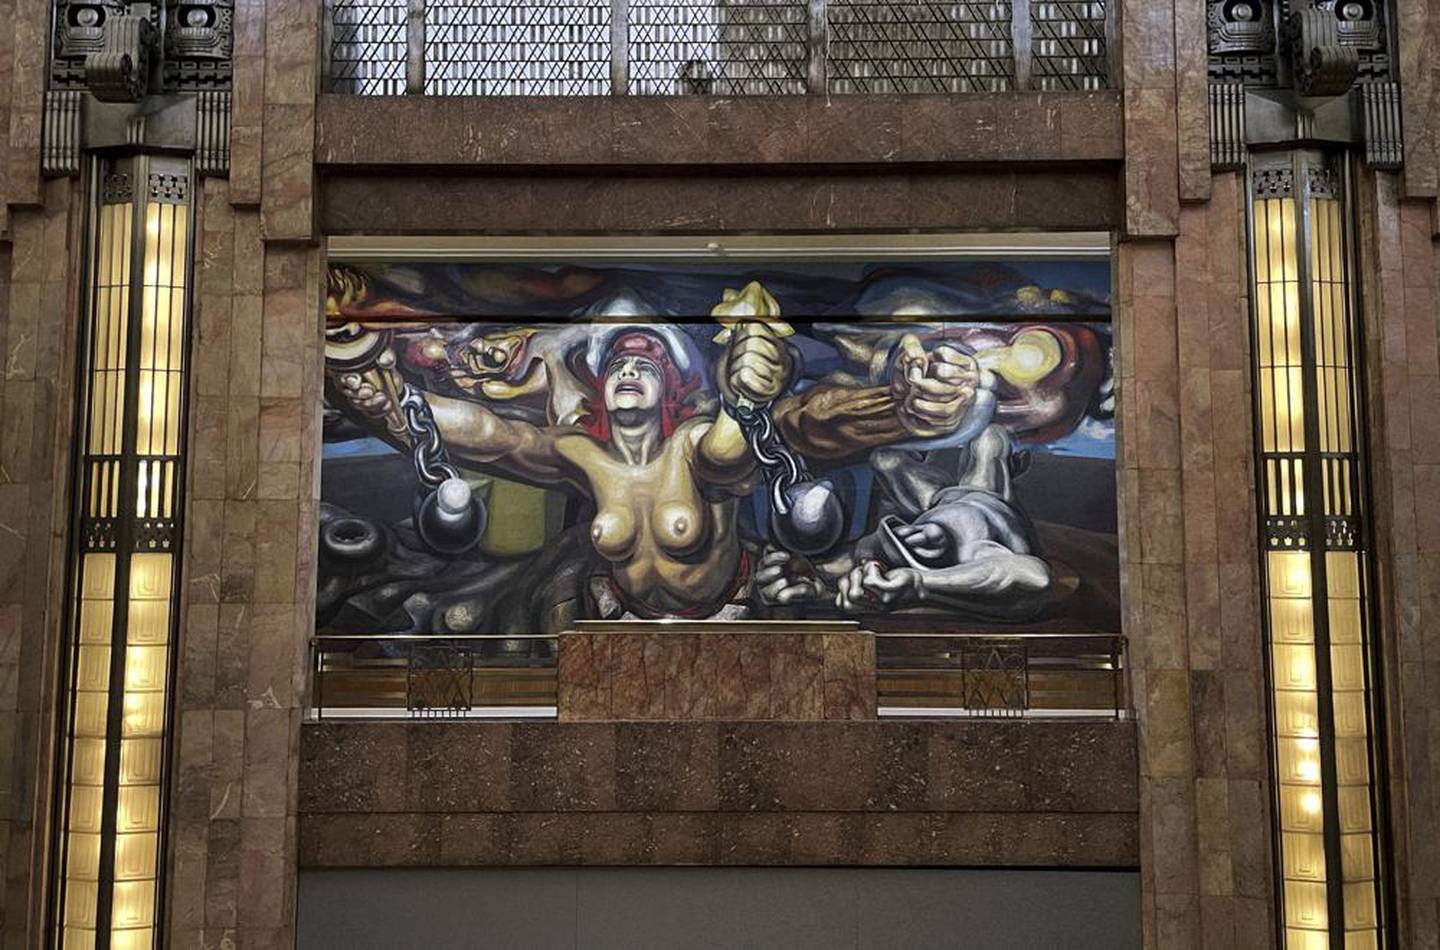 El mural "Nueva democracia" del artista mexicano David Alfaro Siqueiros se exhibe en el Palacio de Bellas Artes, en la Ciudad de México, el martes 2 de agosto de 2022. Las paredes interiores del palaciego centro de artes escénicas Art Nouveau de 88 años están adornadas con famosos murales de Siqueiros, Diego Rivera y José Clemente Orozco. (Foto AP/Fernando Llano)